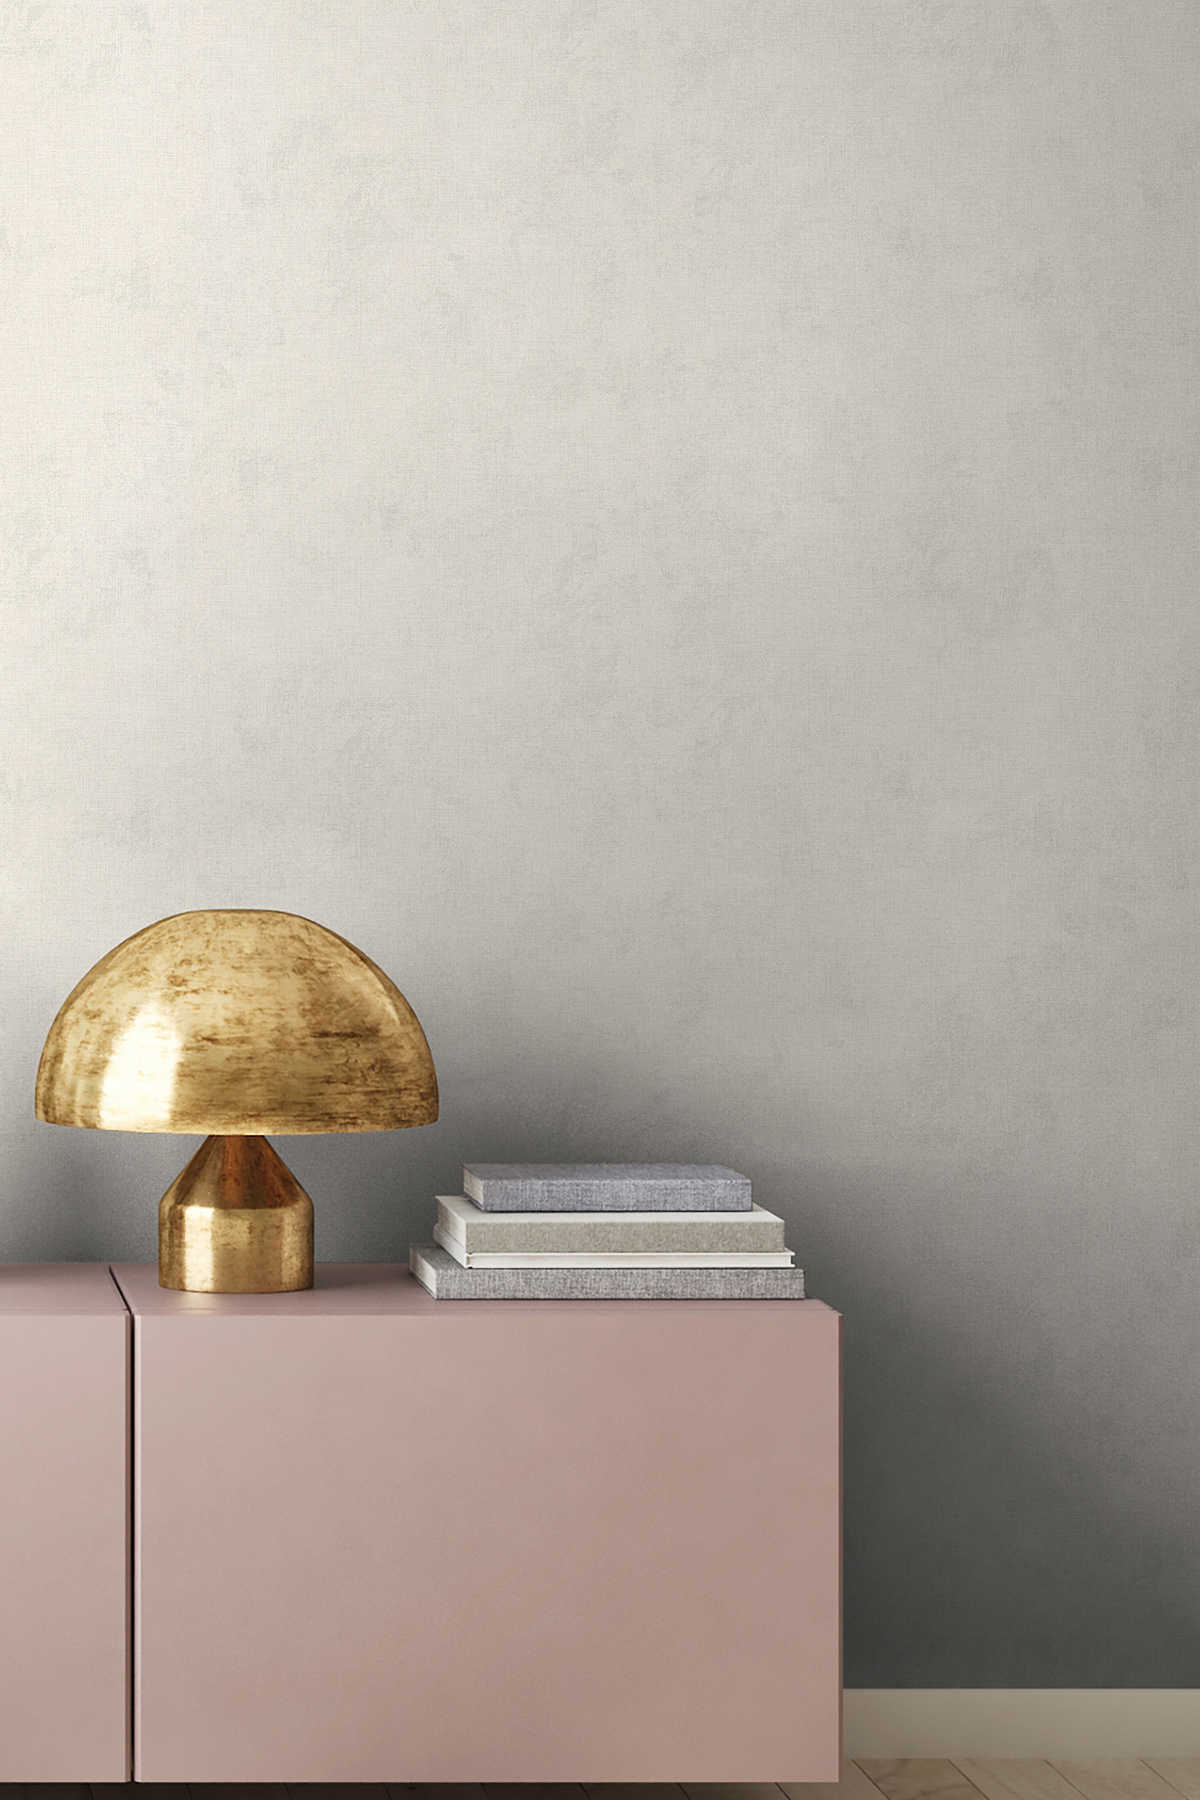             Linen look wallpaper plain, neutral - cream
        